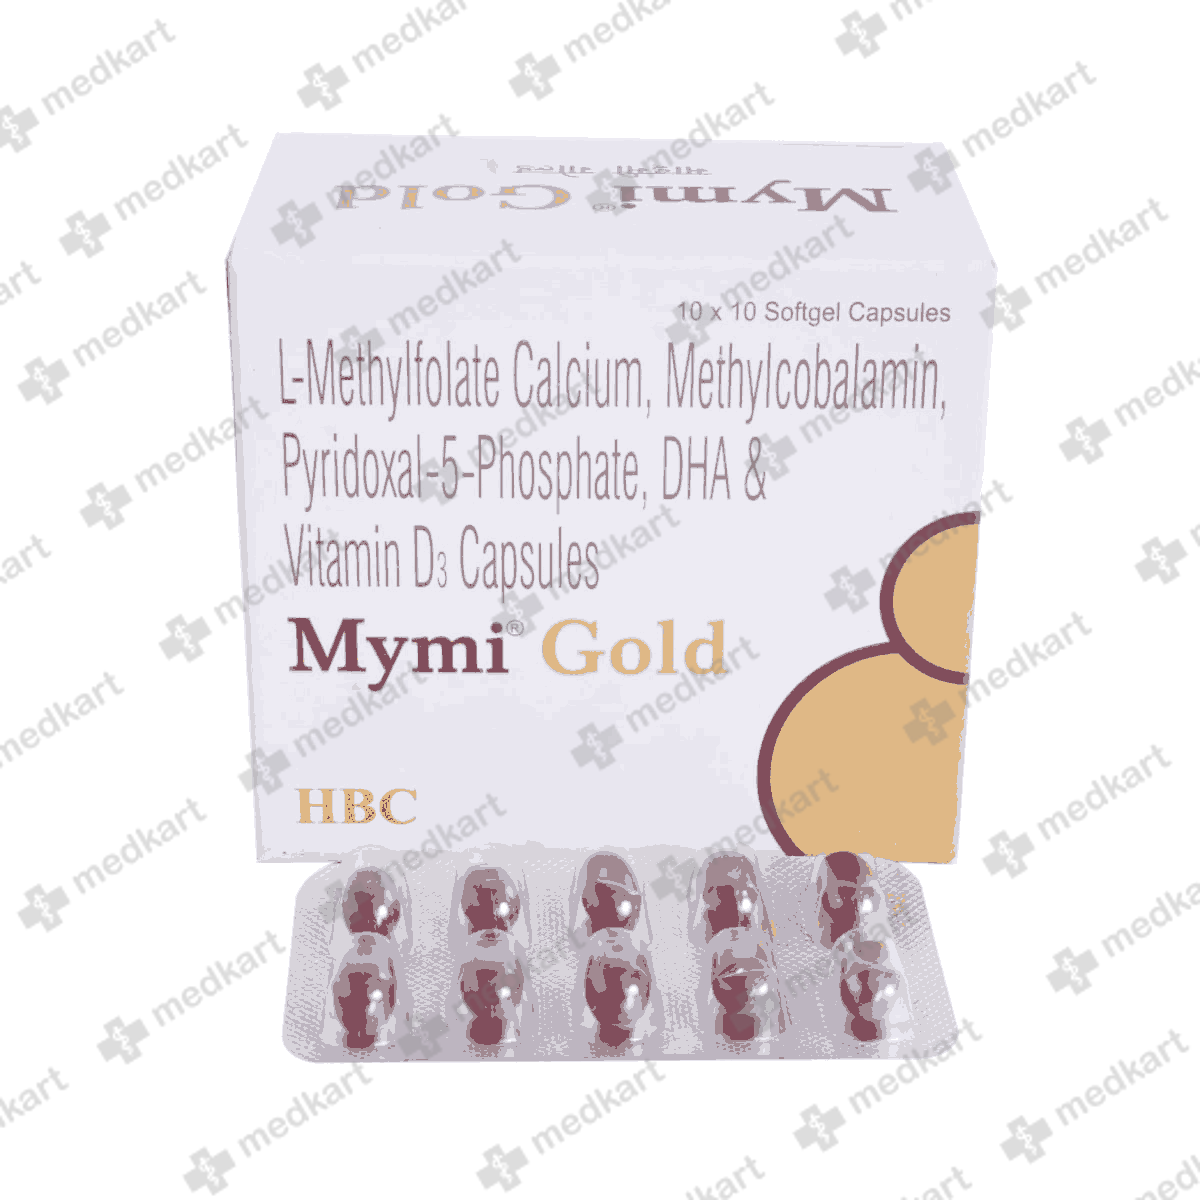 mymi-gold-capsule-10s